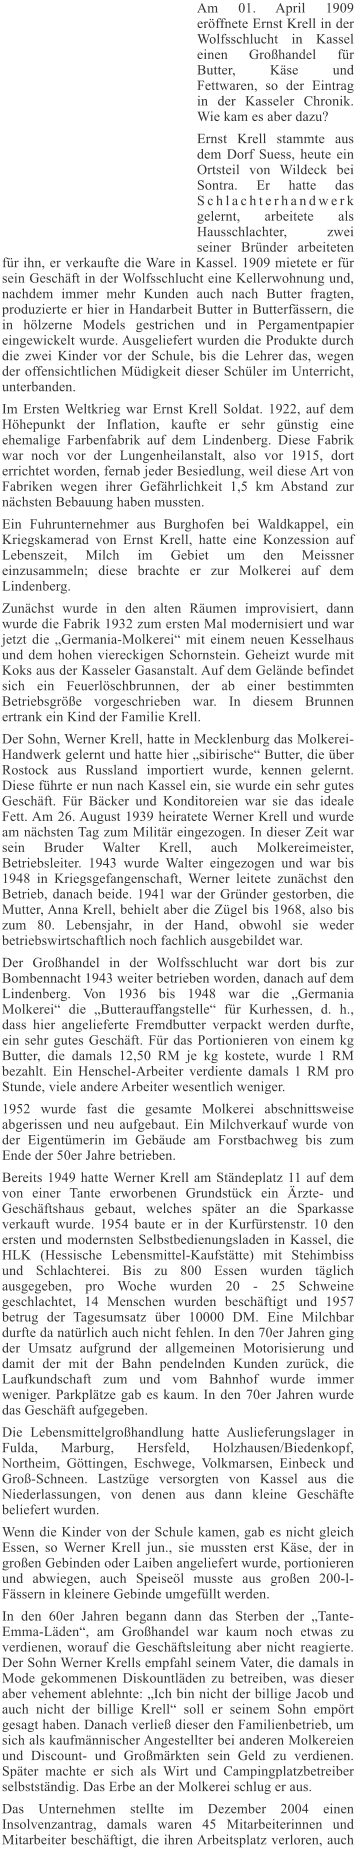 Am 01. April 1909 erffnete Ernst Krell in der Wolfsschlucht in Kassel einen Grohandel fr Butter, Kse und Fettwaren, so der Eintrag in der Kasseler Chronik. Wie kam es aber dazu? Ernst Krell stammte aus dem Dorf Suess, heute ein Ortsteil von Wildeck bei Sontra. Er hatte das Schlachterhandwerk gelernt, arbeitete als Hausschlachter, zwei seiner Brnder arbeiteten fr ihn, er verkaufte die Ware in Kassel. 1909 mietete er fr sein Geschft in der Wolfsschlucht eine Kellerwohnung und, nachdem immer mehr Kunden auch nach Butter fragten, produzierte er hier in Handarbeit Butter in Butterfssern, die in hlzerne Models gestrichen und in Pergamentpapier eingewickelt wurde. Ausgeliefert wurden die Produkte durch die zwei Kinder vor der Schule, bis die Lehrer das, wegen der offensichtlichen Mdigkeit dieser Schler im Unterricht, unterbanden. Im Ersten Weltkrieg war Ernst Krell Soldat. 1922, auf dem Hhepunkt der Inflation, kaufte er sehr gnstig eine ehemalige Farbenfabrik auf dem Lindenberg. Diese Fabrik war noch vor der Lungenheilanstalt, also vor 1915, dort errichtet worden, fernab jeder Besiedlung, weil diese Art von Fabriken wegen ihrer Gefhrlichkeit 1,5 km Abstand zur nchsten Bebauung haben mussten. Ein Fuhrunternehmer aus Burghofen bei Waldkappel, ein Kriegskamerad von Ernst Krell, hatte eine Konzession auf Lebenszeit, Milch im Gebiet um den Meissner einzusammeln; diese brachte er zur Molkerei auf dem Lindenberg. Zunchst wurde in den alten Rumen improvisiert, dann wurde die Fabrik 1932 zum ersten Mal modernisiert und war jetzt die Germania-Molkerei mit einem neuen Kesselhaus und dem hohen viereckigen Schornstein. Geheizt wurde mit Koks aus der Kasseler Gasanstalt. Auf dem Gelnde befindet sich ein Feuerlschbrunnen, der ab einer bestimmten Betriebsgre vorgeschrieben war. In diesem Brunnen ertrank ein Kind der Familie Krell. Der Sohn, Werner Krell, hatte in Mecklenburg das Molkerei-Handwerk gelernt und hatte hier sibirische Butter, die ber Rostock aus Russland importiert wurde, kennen gelernt. Diese fhrte er nun nach Kassel ein, sie wurde ein sehr gutes Geschft. Fr Bcker und Konditoreien war sie das ideale Fett. Am 26. August 1939 heiratete Werner Krell und wurde am nchsten Tag zum Militr eingezogen. In dieser Zeit war sein Bruder Walter Krell, auch Molkereimeister, Betriebsleiter. 1943 wurde Walter eingezogen und war bis 1948 in Kriegsgefangenschaft, Werner leitete zunchst den Betrieb, danach beide. 1941 war der Grnder gestorben, die Mutter, Anna Krell, behielt aber die Zgel bis 1968, also bis zum 80. Lebensjahr, in der Hand, obwohl sie weder betriebswirtschaftlich noch fachlich ausgebildet war. Der Grohandel in der Wolfsschlucht war dort bis zur Bombennacht 1943 weiter betrieben worden, danach auf dem Lindenberg. Von 1936 bis 1948 war die Germania Molkerei die Butterauffangstelle fr Kurhessen, d. h., dass hier angelieferte Fremdbutter verpackt werden durfte, ein sehr gutes Geschft. Fr das Portionieren von einem kg Butter, die damals 12,50 RM je kg kostete, wurde 1 RM bezahlt. Ein Henschel-Arbeiter verdiente damals 1 RM pro Stunde, viele andere Arbeiter wesentlich weniger. 1952 wurde fast die gesamte Molkerei abschnittsweise abgerissen und neu aufgebaut. Ein Milchverkauf wurde von der Eigentmerin im Gebude am Forstbachweg bis zum Ende der 50er Jahre betrieben. Bereits 1949 hatte Werner Krell am Stndeplatz 11 auf dem von einer Tante erworbenen Grundstck ein rzte- und Geschftshaus gebaut, welches spter an die Sparkasse verkauft wurde. 1954 baute er in der Kurfrstenstr. 10 den ersten und modernsten Selbstbedienungsladen in Kassel, die HLK (Hessische Lebensmittel-Kaufsttte) mit Stehimbiss und Schlachterei. Bis zu 800 Essen wurden tglich ausgegeben, pro Woche wurden 20 - 25 Schweine geschlachtet, 14 Menschen wurden beschftigt und 1957 betrug der Tagesumsatz ber 10000 DM. Eine Milchbar durfte da natrlich auch nicht fehlen. In den 70er Jahren ging der Umsatz aufgrund der allgemeinen Motorisierung und damit der mit der Bahn pendelnden Kunden zurck, die Laufkundschaft zum und vom Bahnhof wurde immer weniger. Parkpltze gab es kaum. In den 70er Jahren wurde das Geschft aufgegeben. Die Lebensmittelgrohandlung hatte Auslieferungslager in Fulda, Marburg, Hersfeld, Holzhausen/Biedenkopf, Northeim, Gttingen, Eschwege, Volkmarsen, Einbeck und Gro-Schneen. Lastzge versorgten von Kassel aus die Niederlassungen, von denen aus dann kleine Geschfte beliefert wurden. Wenn die Kinder von der Schule kamen, gab es nicht gleich Essen, so Werner Krell jun., sie mussten erst Kse, der in groen Gebinden oder Laiben angeliefert wurde, portionieren und abwiegen, auch Speisel musste aus groen 200-l-Fssern in kleinere Gebinde umgefllt werden. In den 60er Jahren begann dann das Sterben der Tante-Emma-Lden, am Grohandel war kaum noch etwas zu verdienen, worauf die Geschftsleitung aber nicht reagierte. Der Sohn Werner Krells empfahl seinem Vater, die damals in Mode gekommenen Diskountlden zu betreiben, was dieser aber vehement ablehnte: Ich bin nicht der billige Jacob und auch nicht der billige Krell soll er seinem Sohn emprt gesagt haben. Danach verlie dieser den Familienbetrieb, um sich als kaufmnnischer Angestellter bei anderen Molkereien und Discount- und Gromrkten sein Geld zu verdienen. Spter machte er sich als Wirt und Campingplatzbetreiber selbststndig. Das Erbe an der Molkerei schlug er aus. Das Unternehmen stellte im Dezember 2004 einen Insolvenzantrag, damals waren 45 Mitarbeiterinnen und Mitarbeiter beschftigt, die ihren Arbeitsplatz verloren, auch